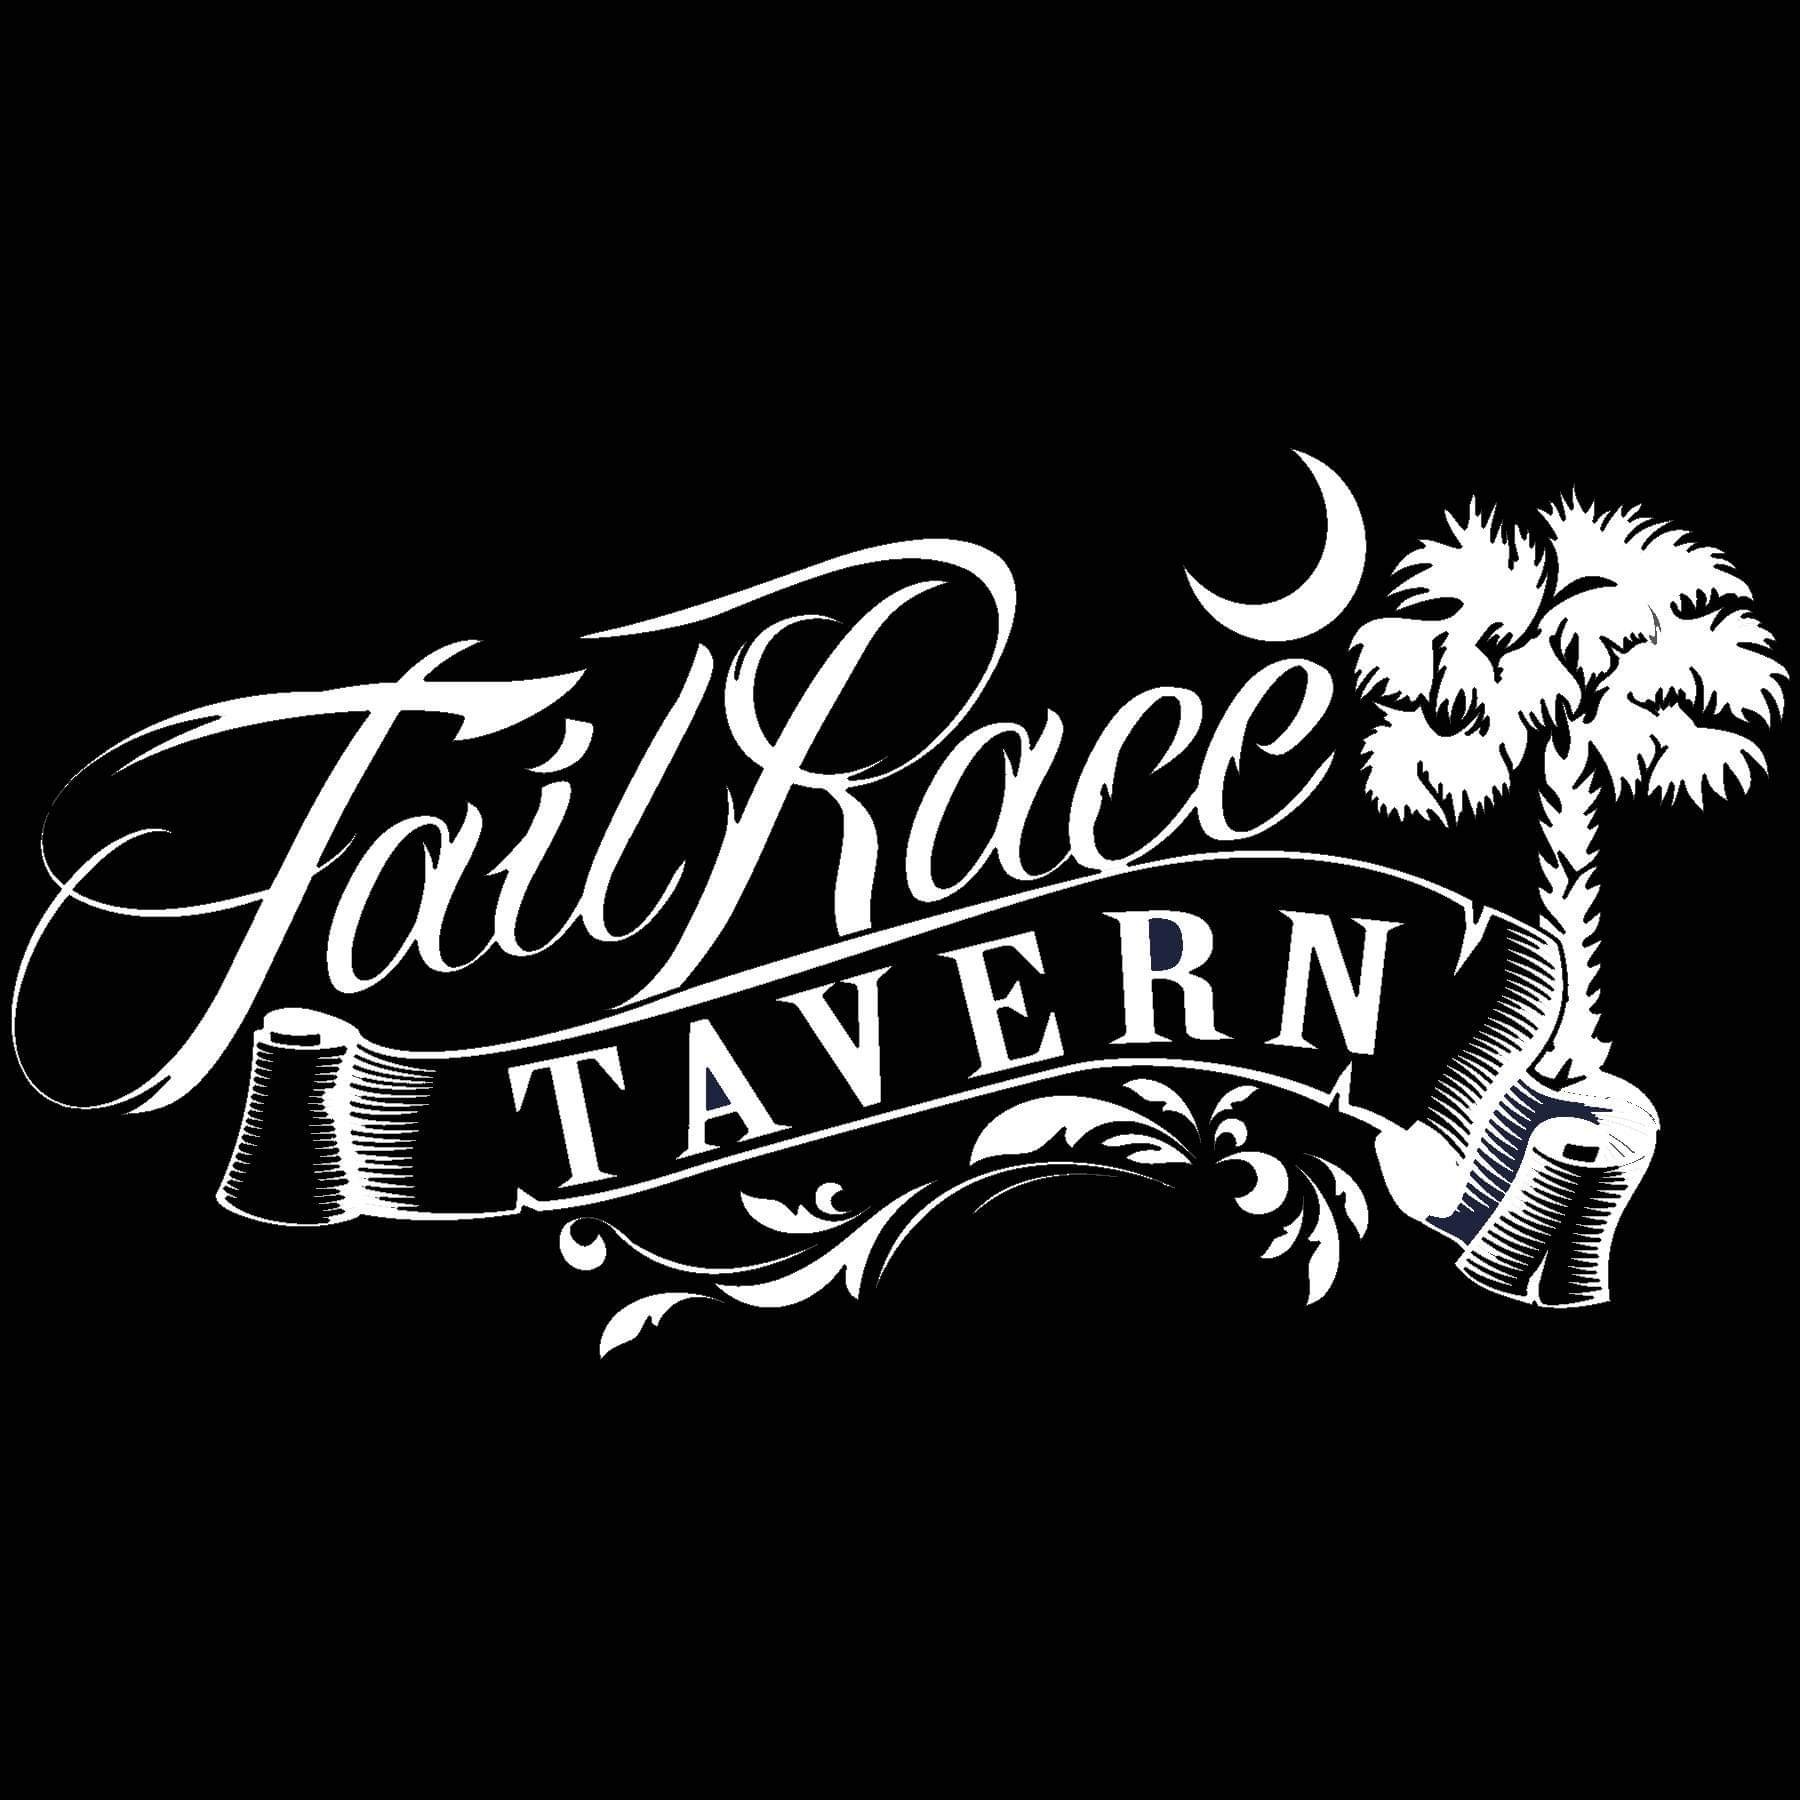 Tail Race Tavern 418 Barony St